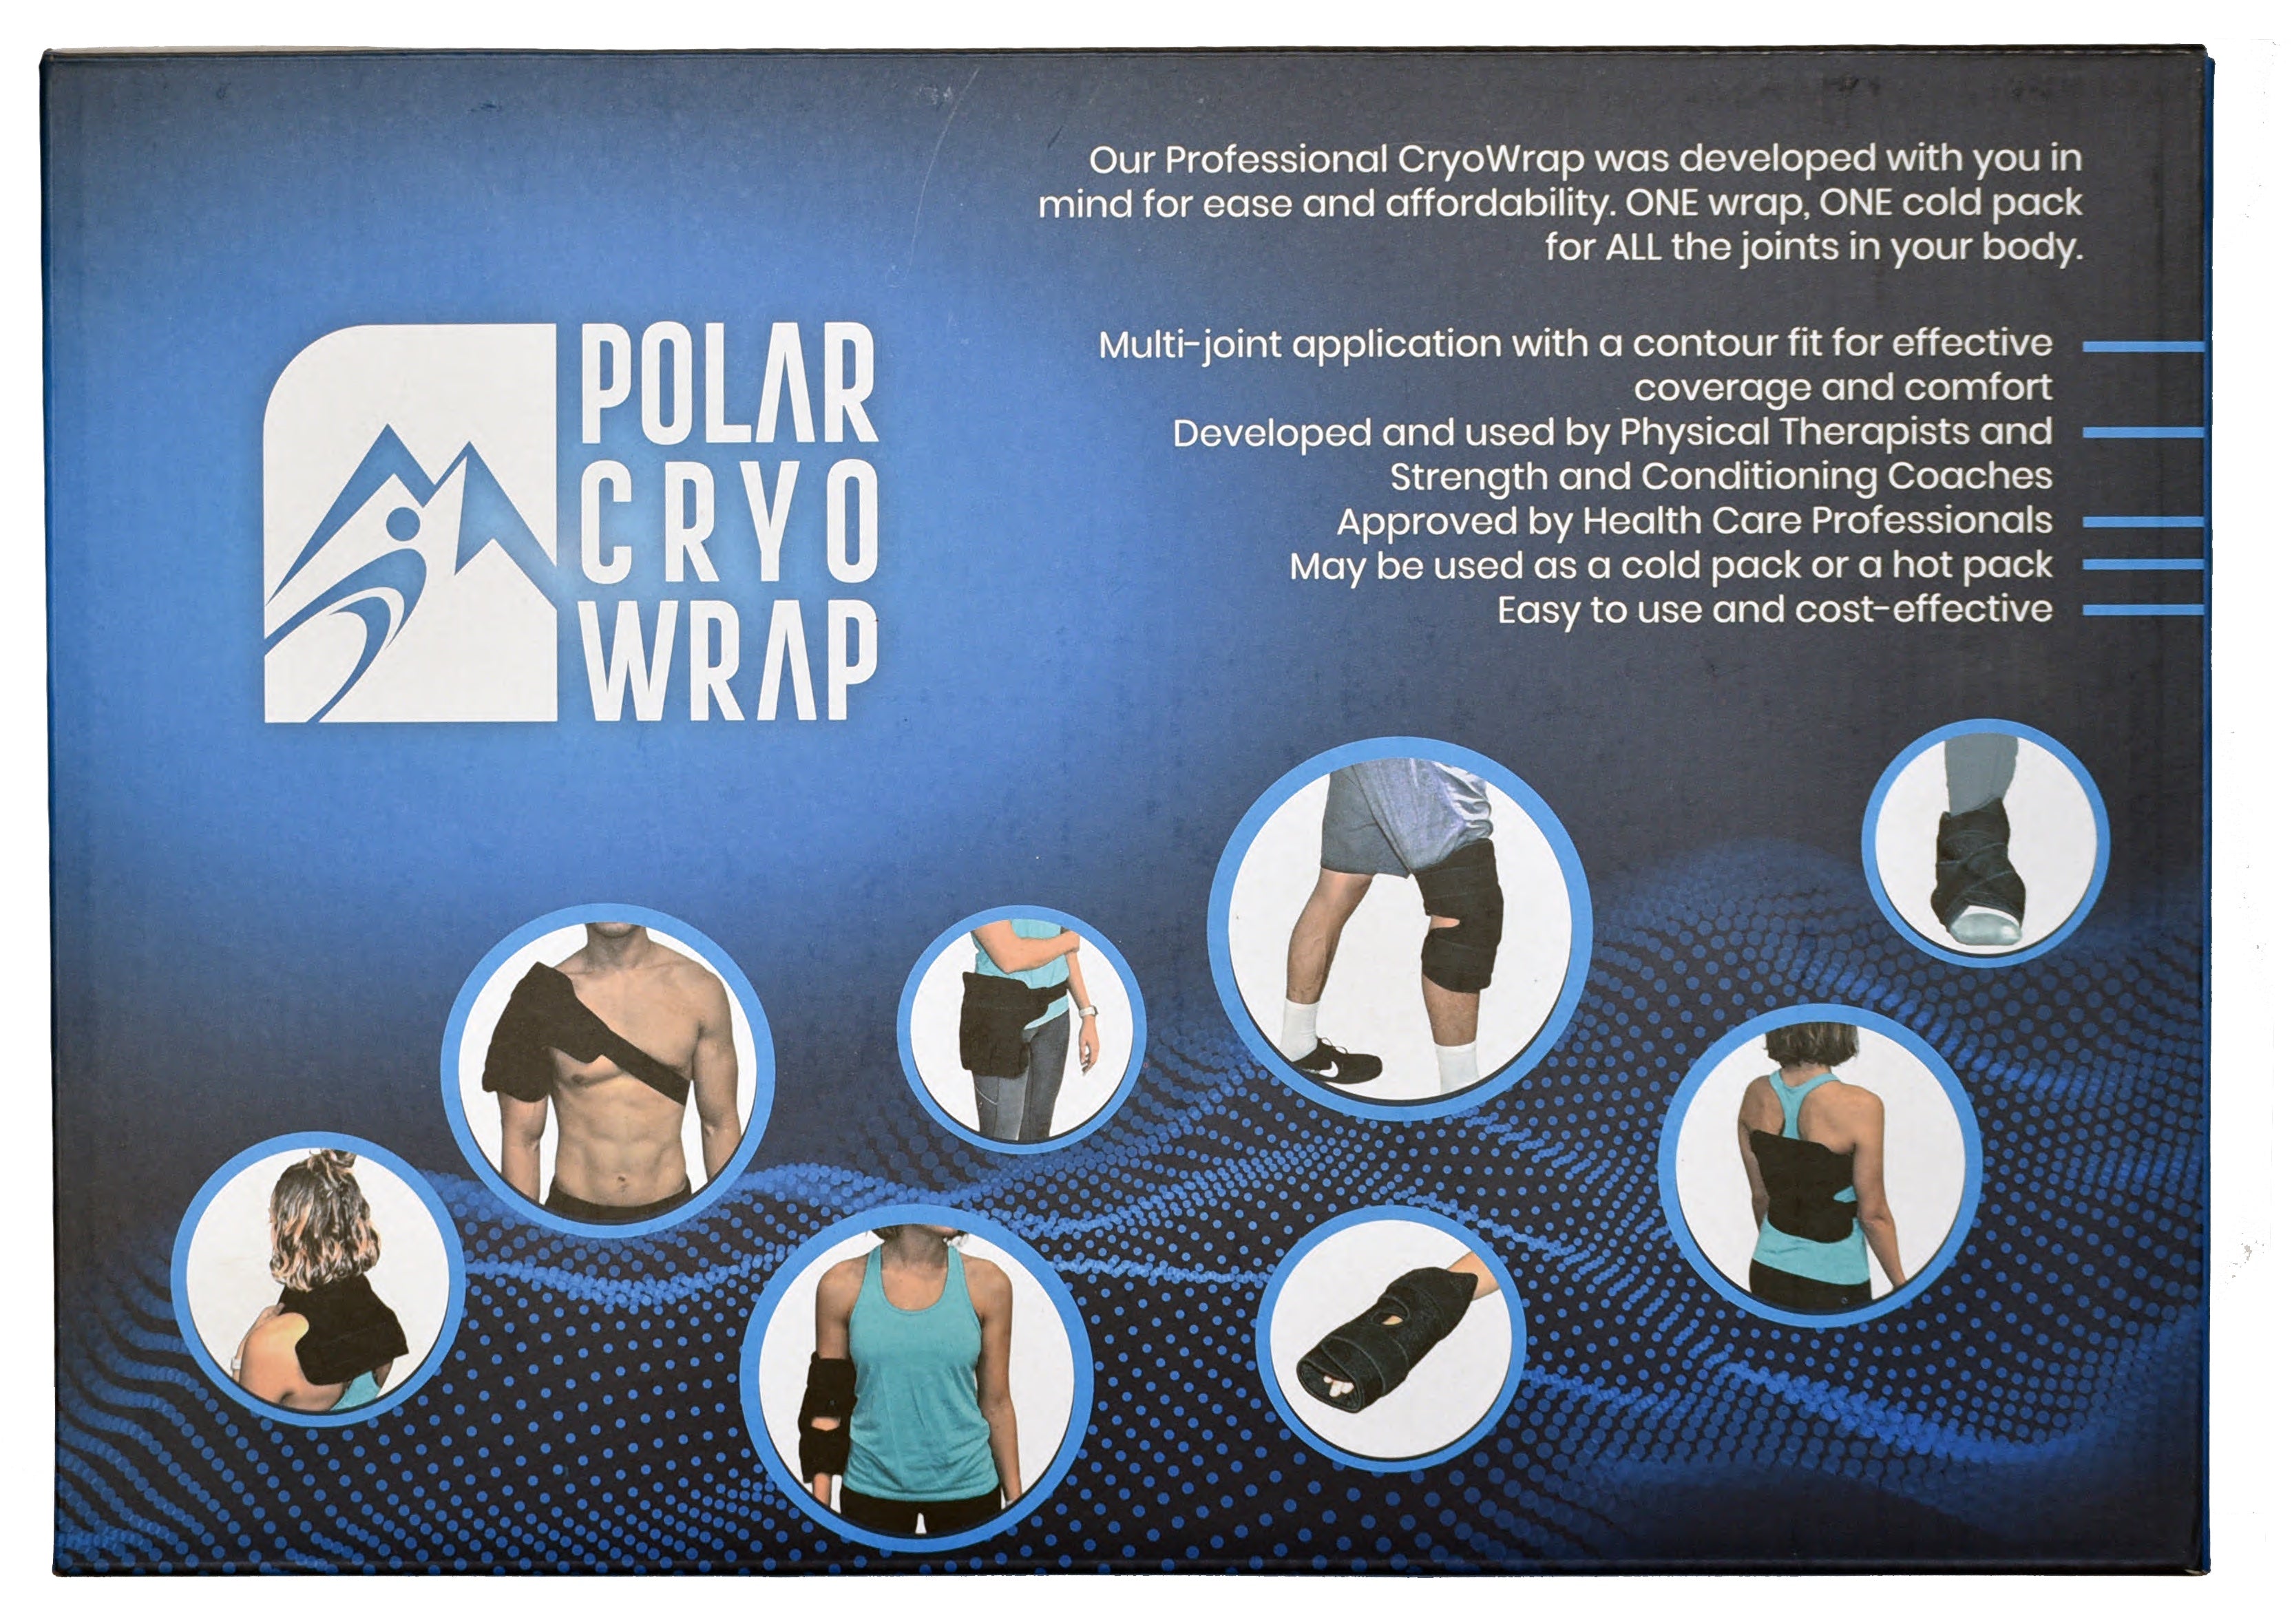 Polar Cryo Wrap